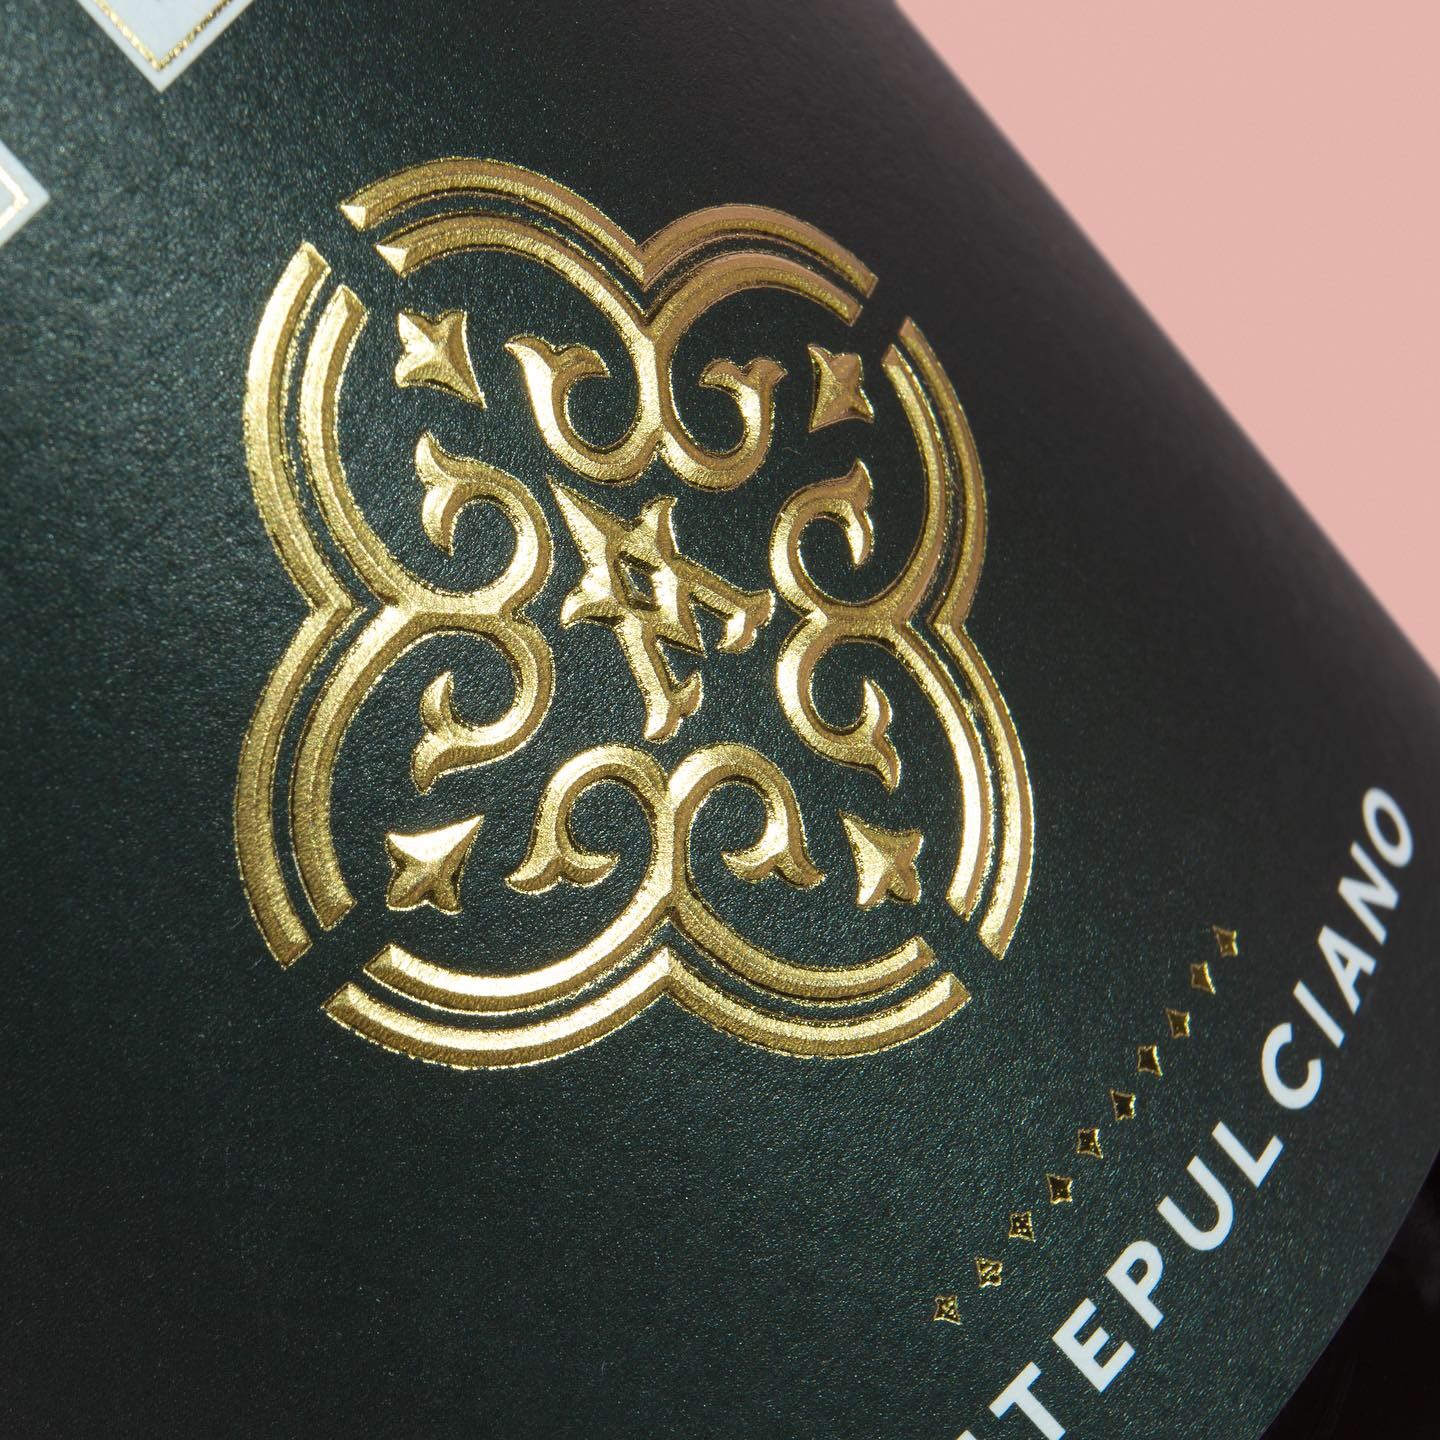 Altero Wines Packaging Design